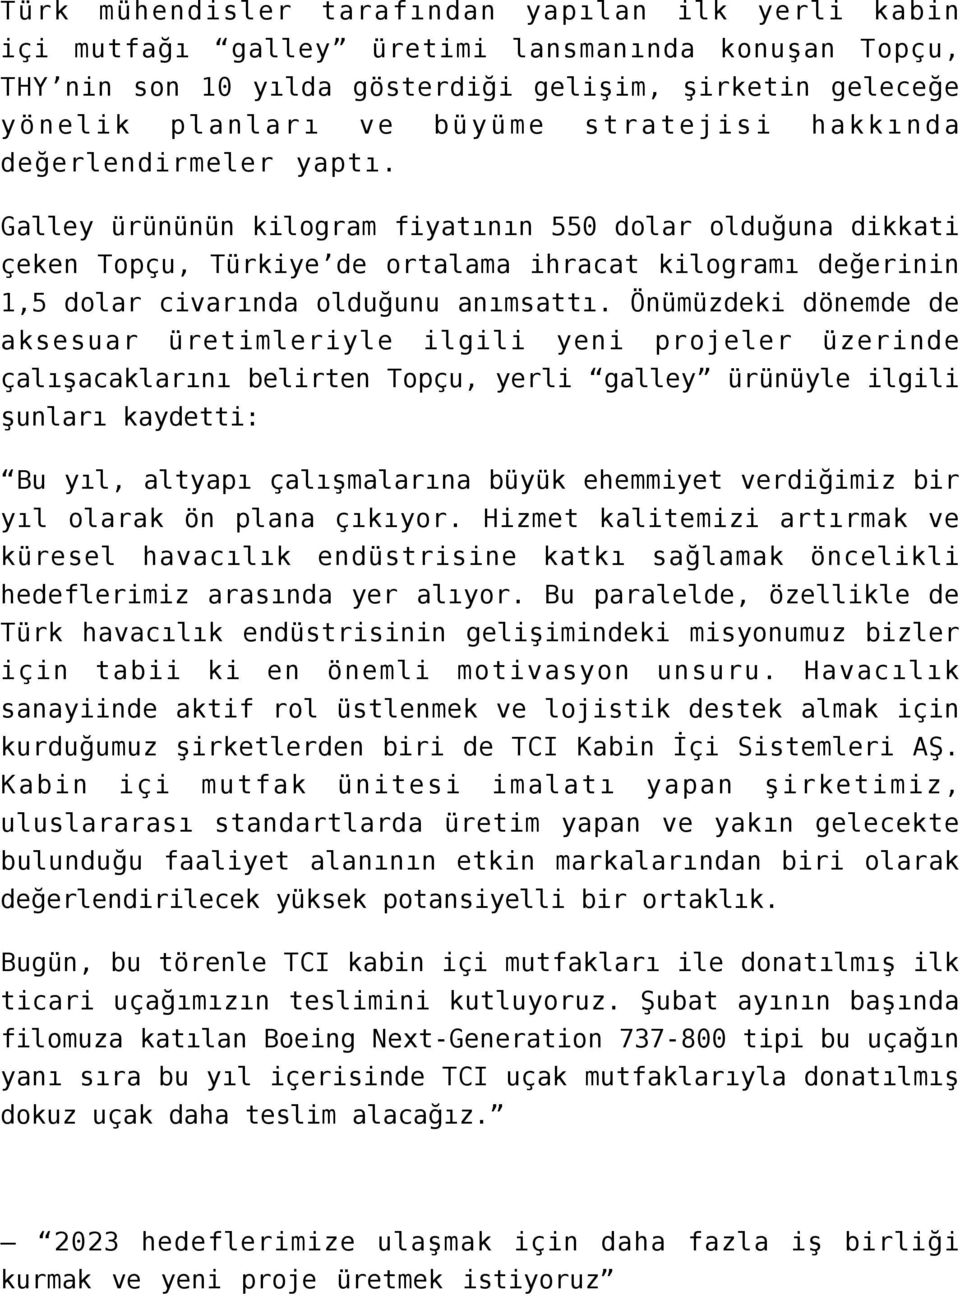 Galley ürününün kilogram fiyatının 550 dolar olduğuna dikkati çeken Topçu, Türkiye de ortalama ihracat kilogramı değerinin 1,5 dolar civarında olduğunu anımsattı.